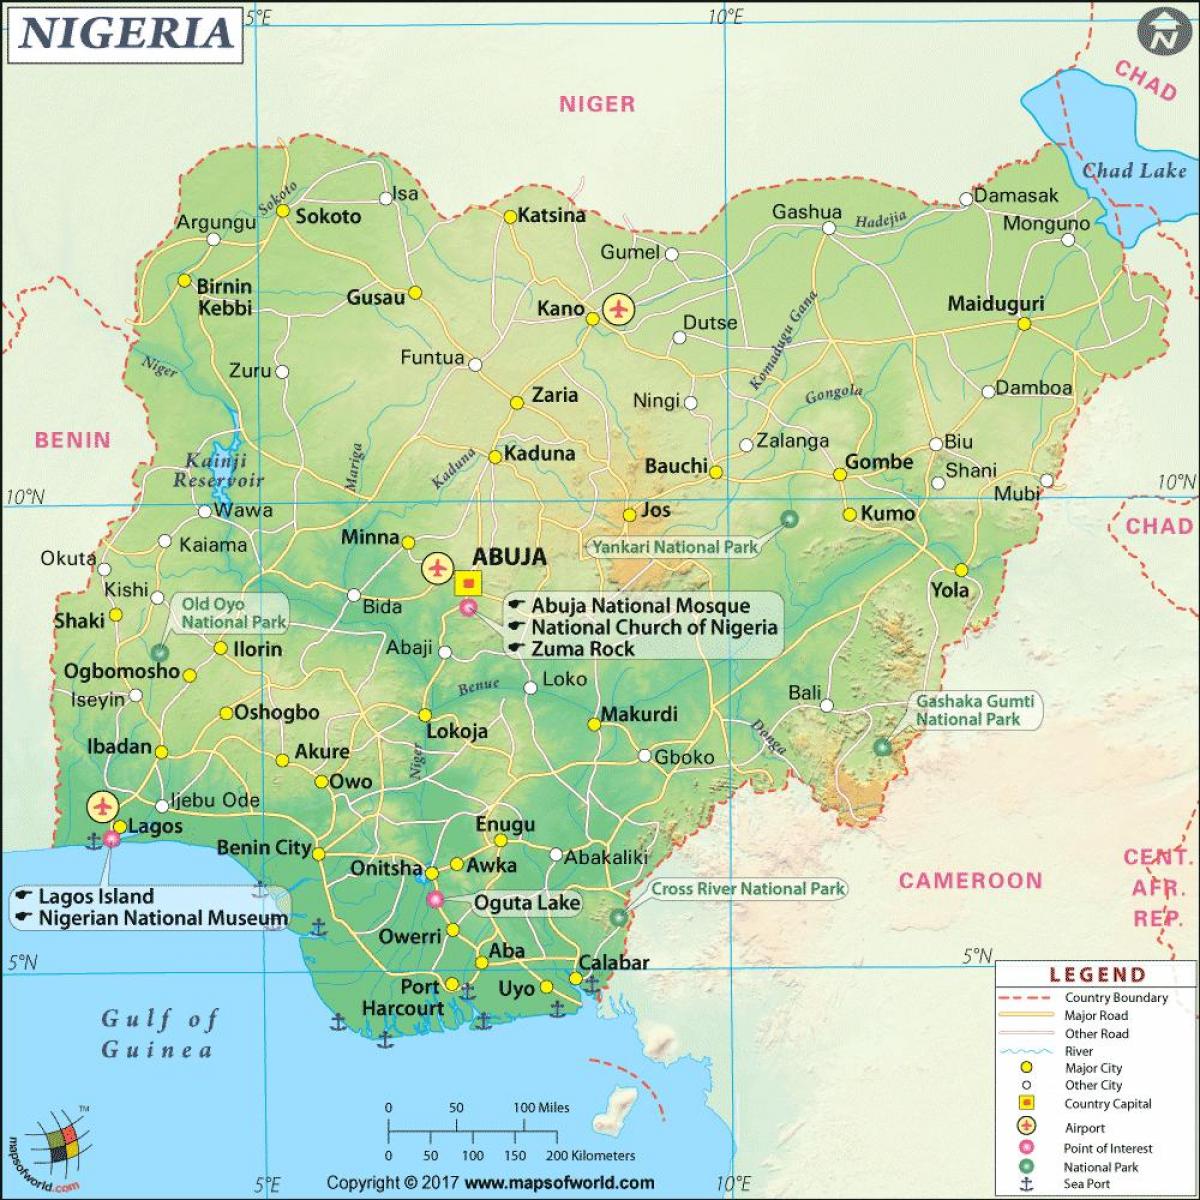 фотографии нигерийских карте